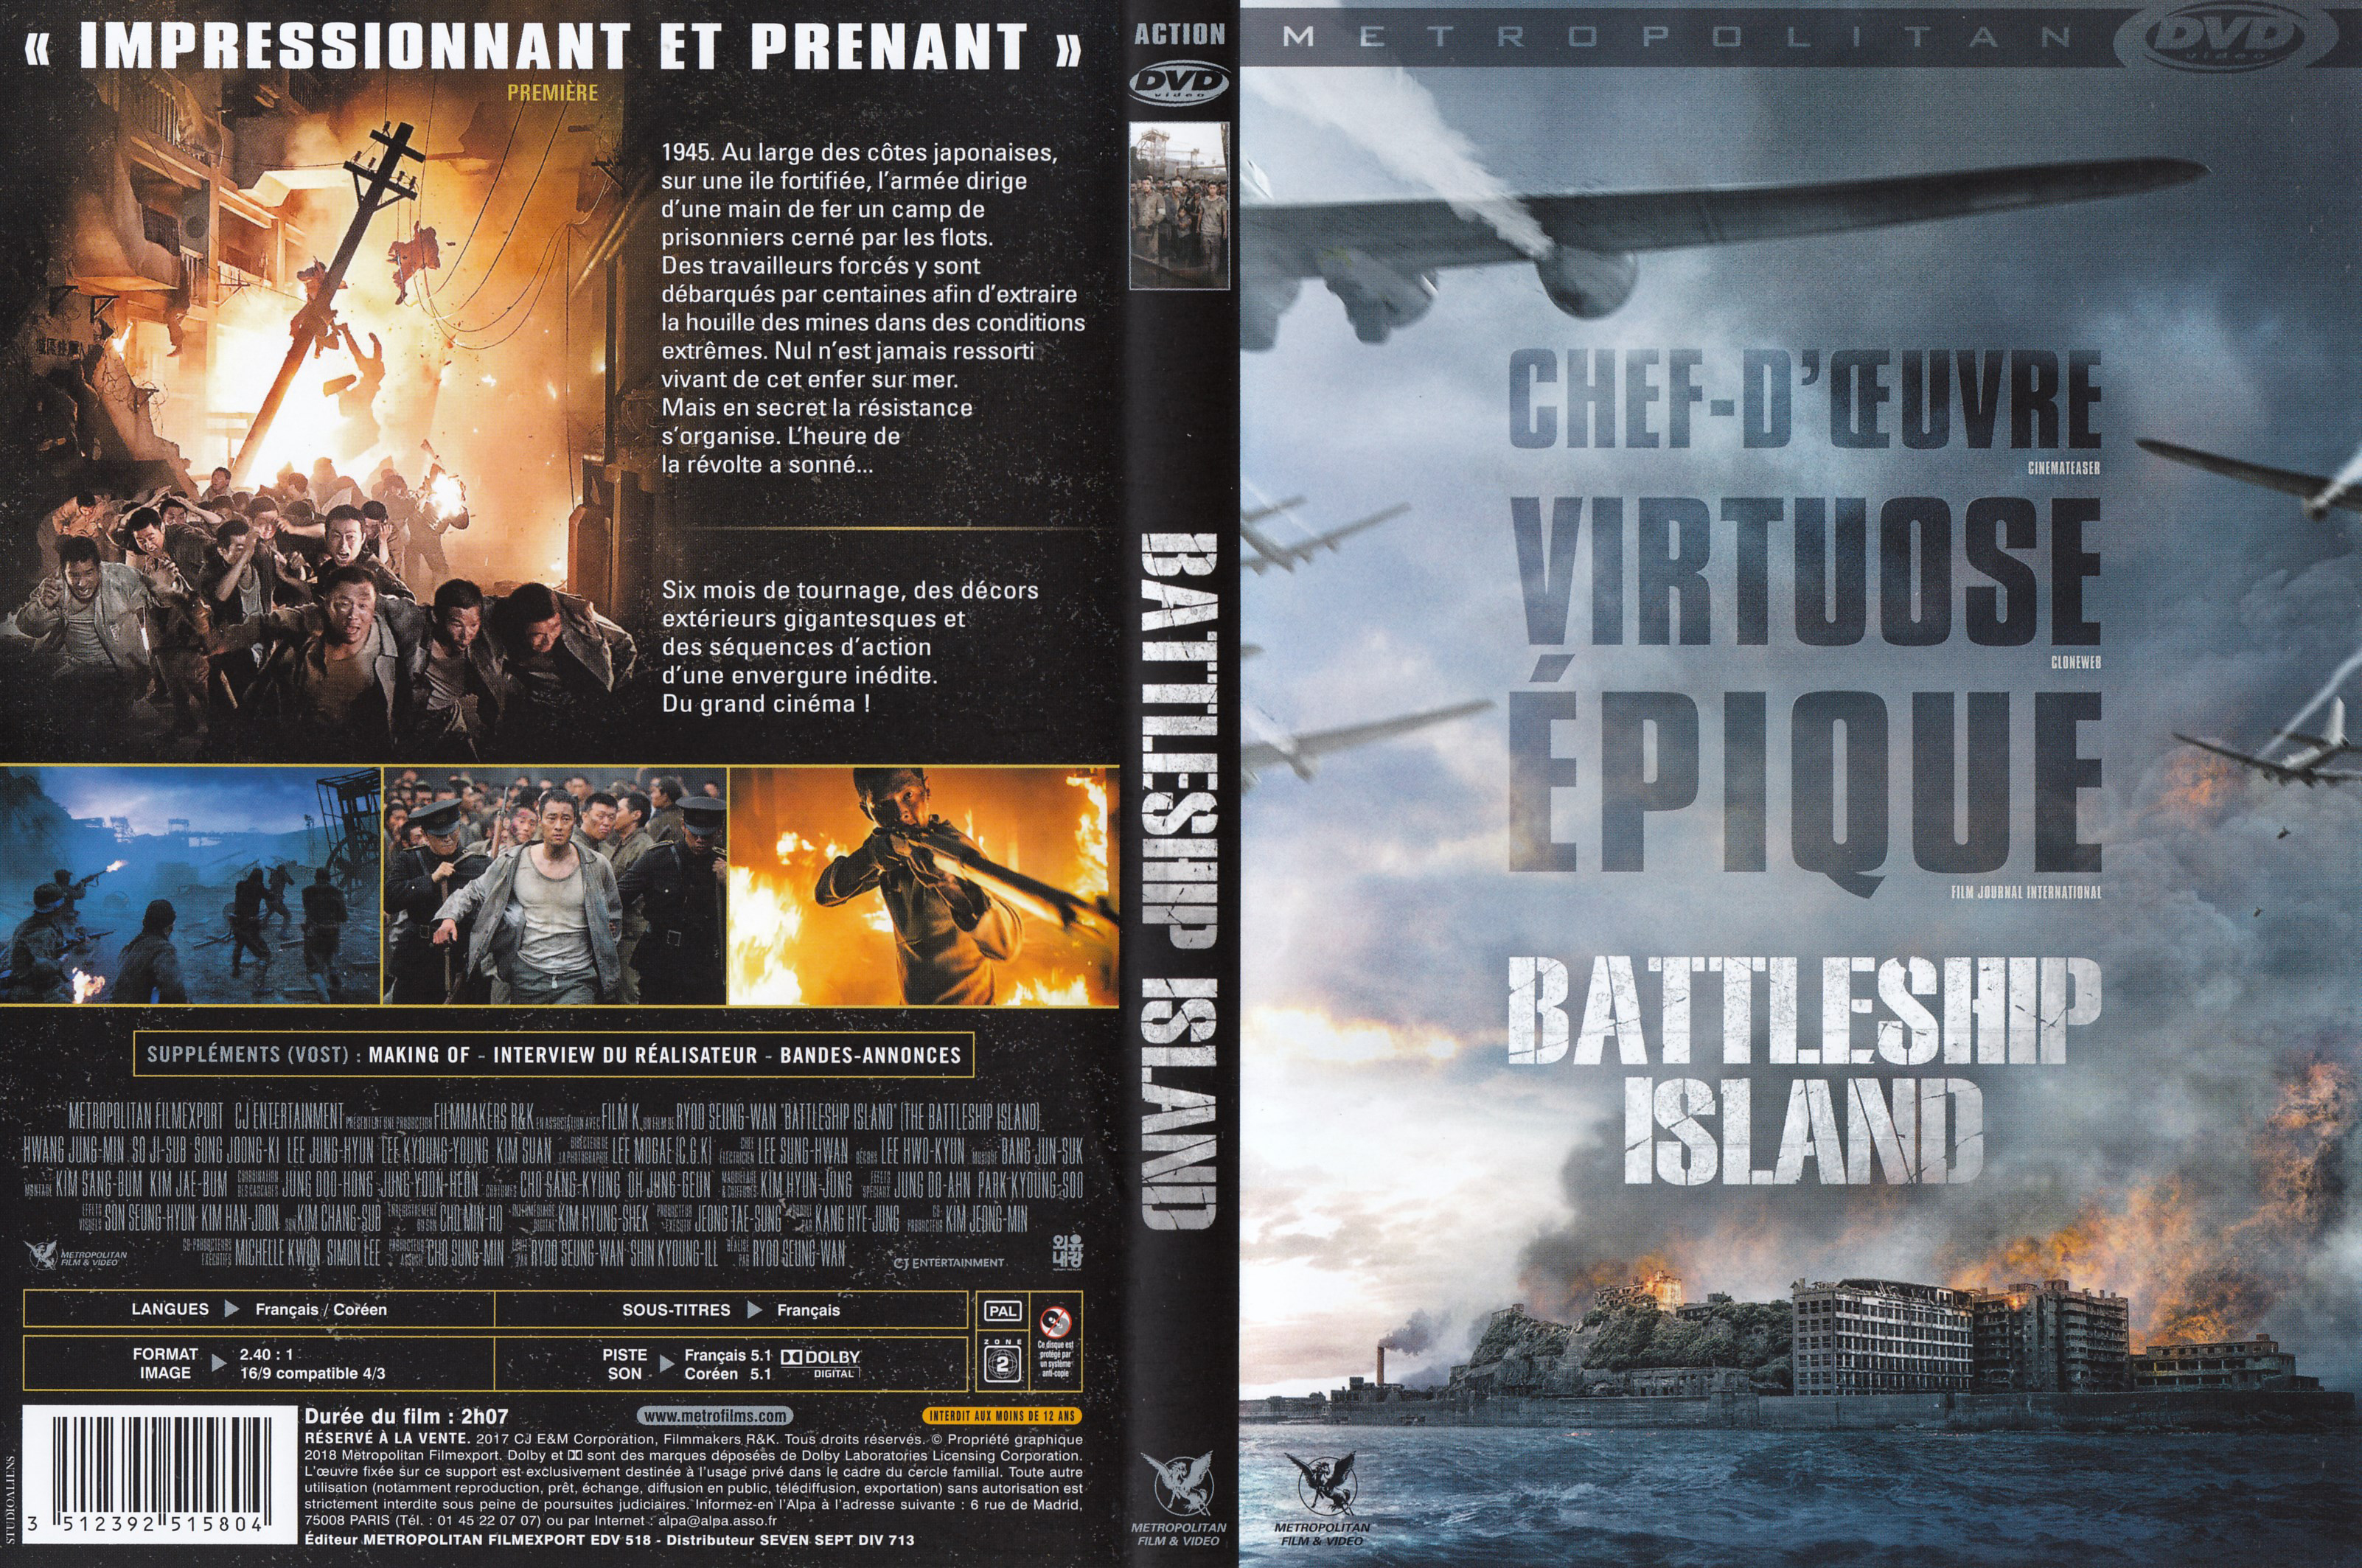 Jaquette DVD Battleship island